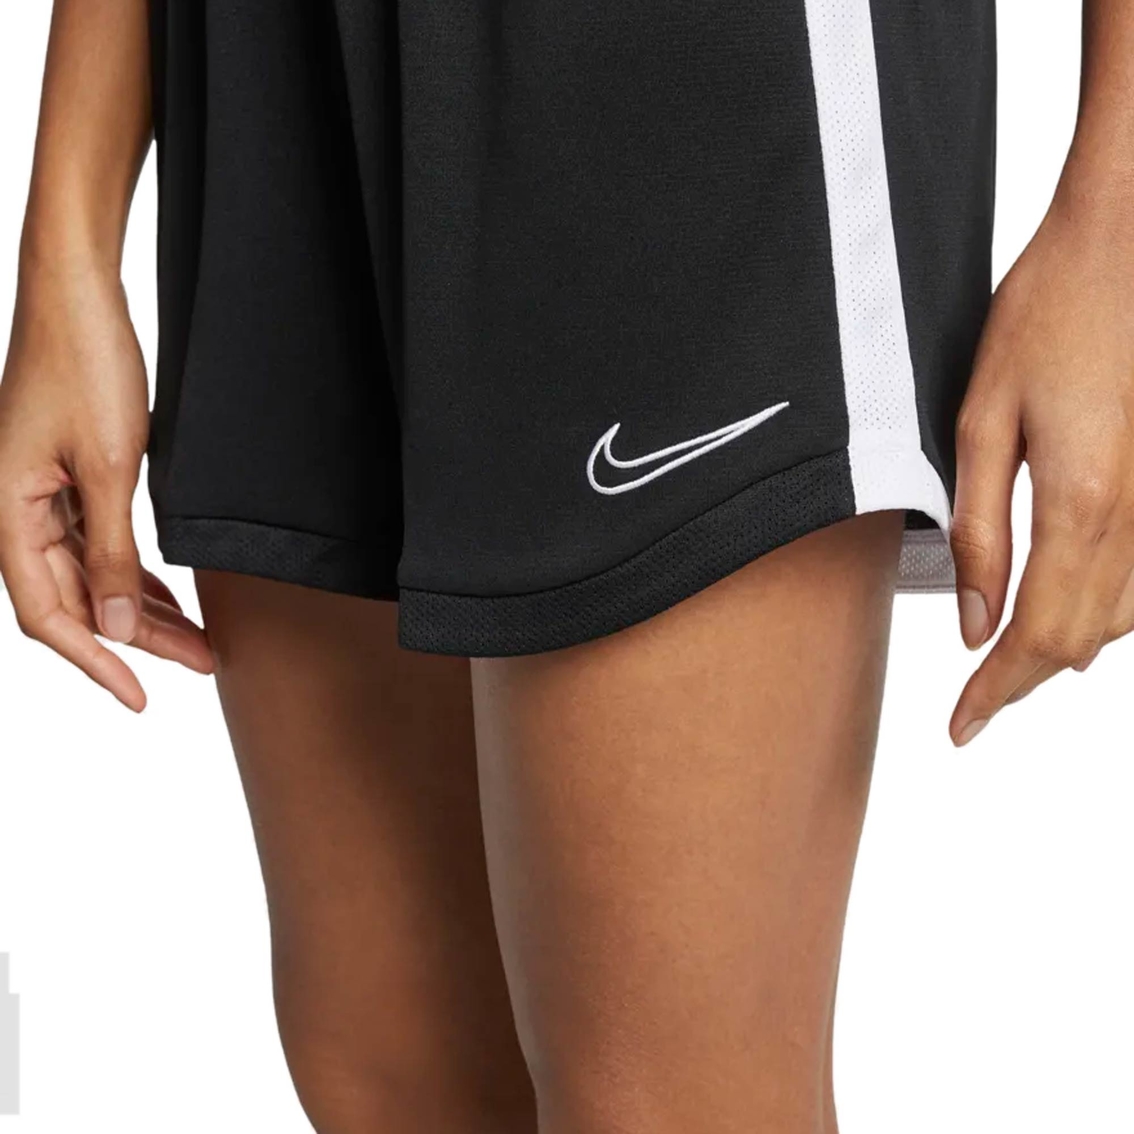 Nike Dry Academy Shorts - Image 3 of 5